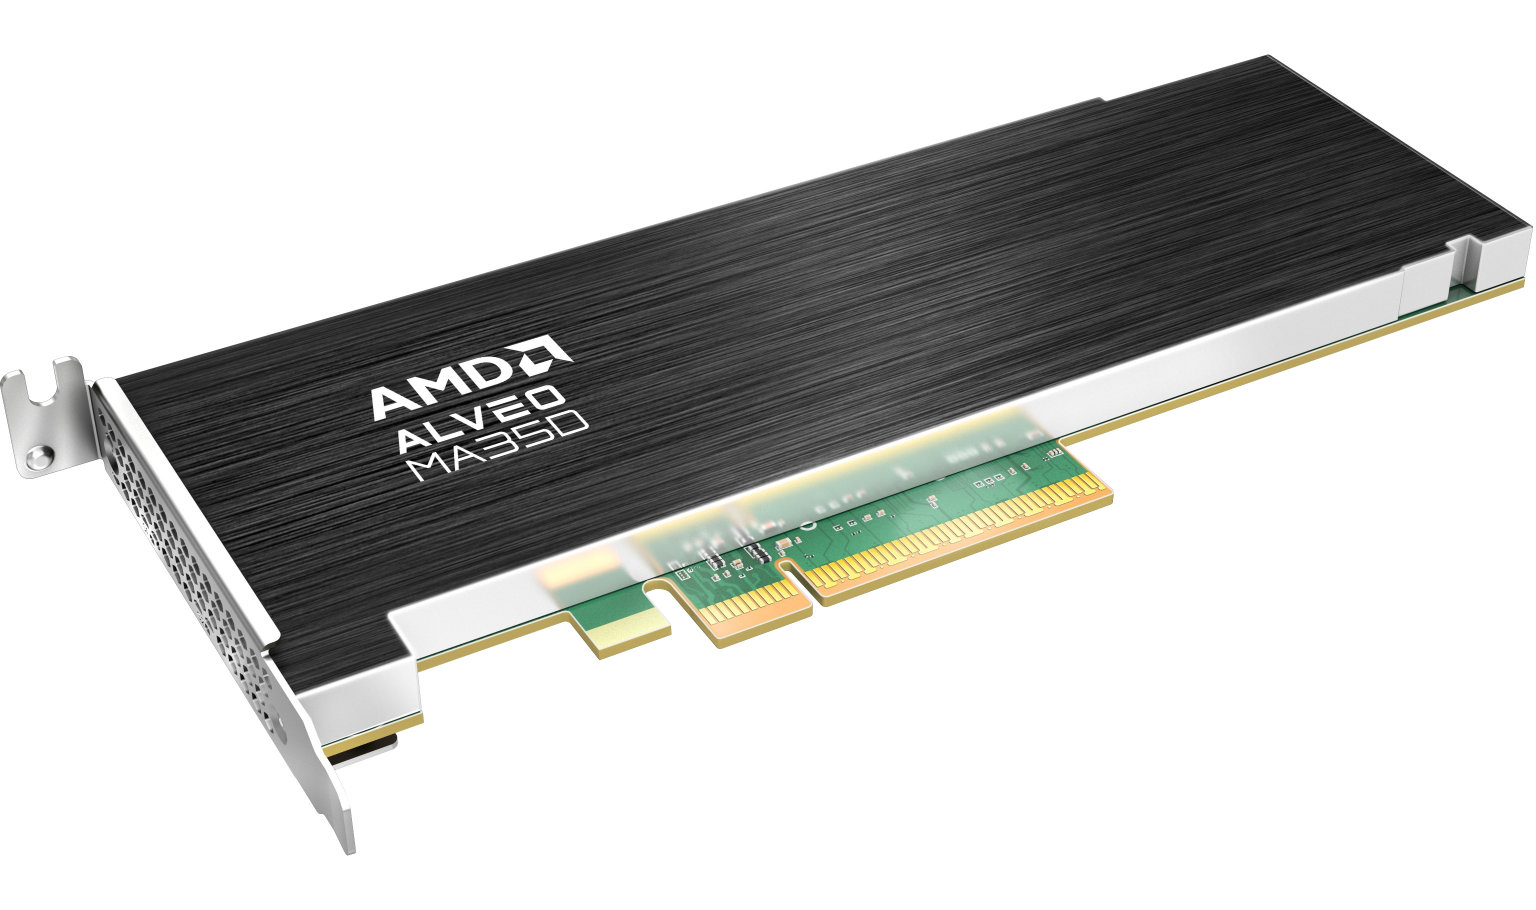 AMD Alveo MA35D: FPGA accelerator for AV1, H.265 and H.264 codecs